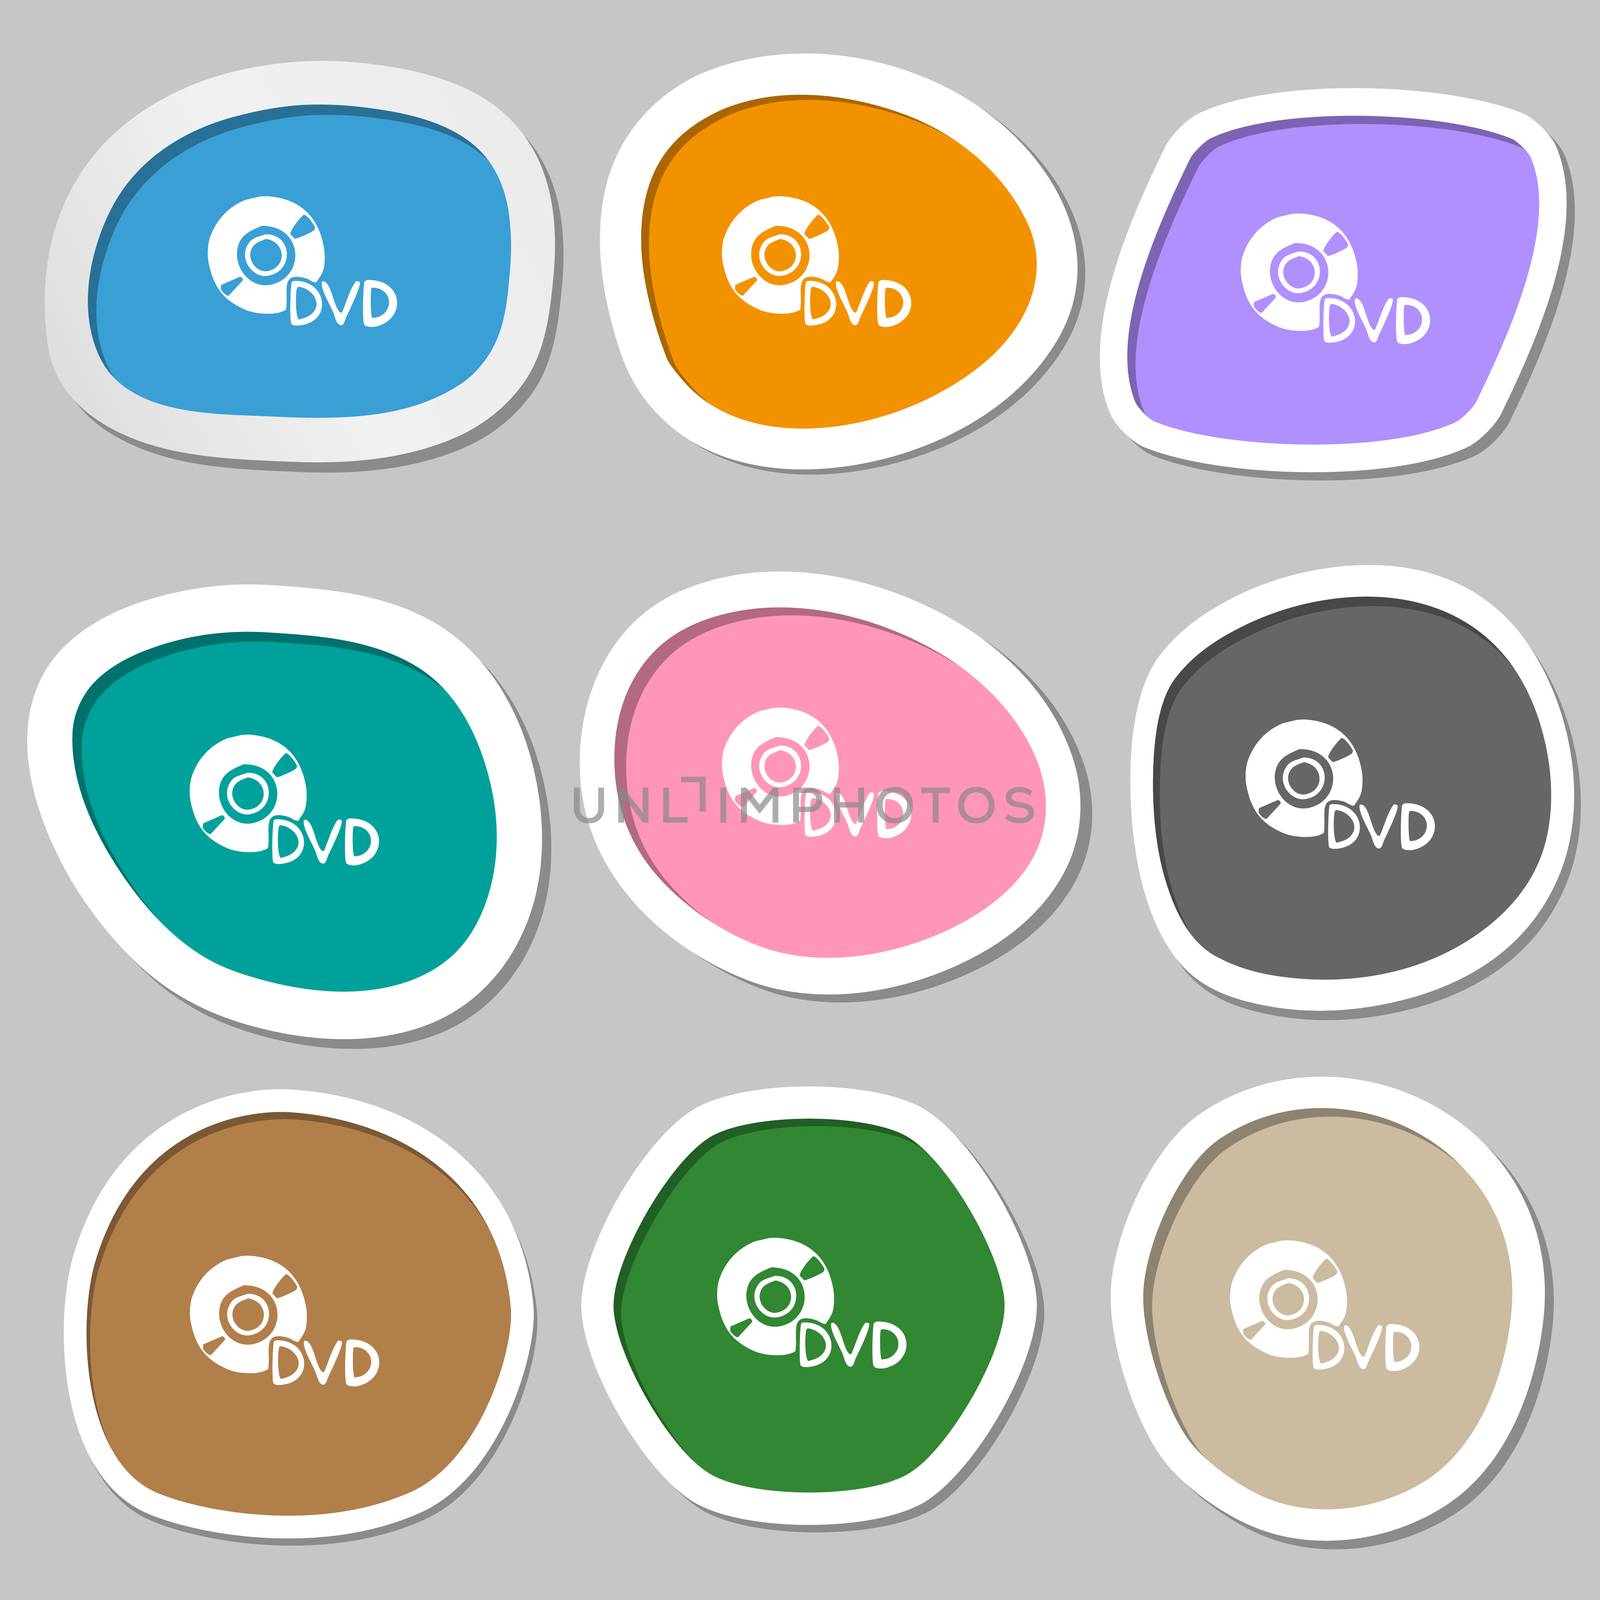 dvd icon symbols. Multicolored paper stickers. illustration